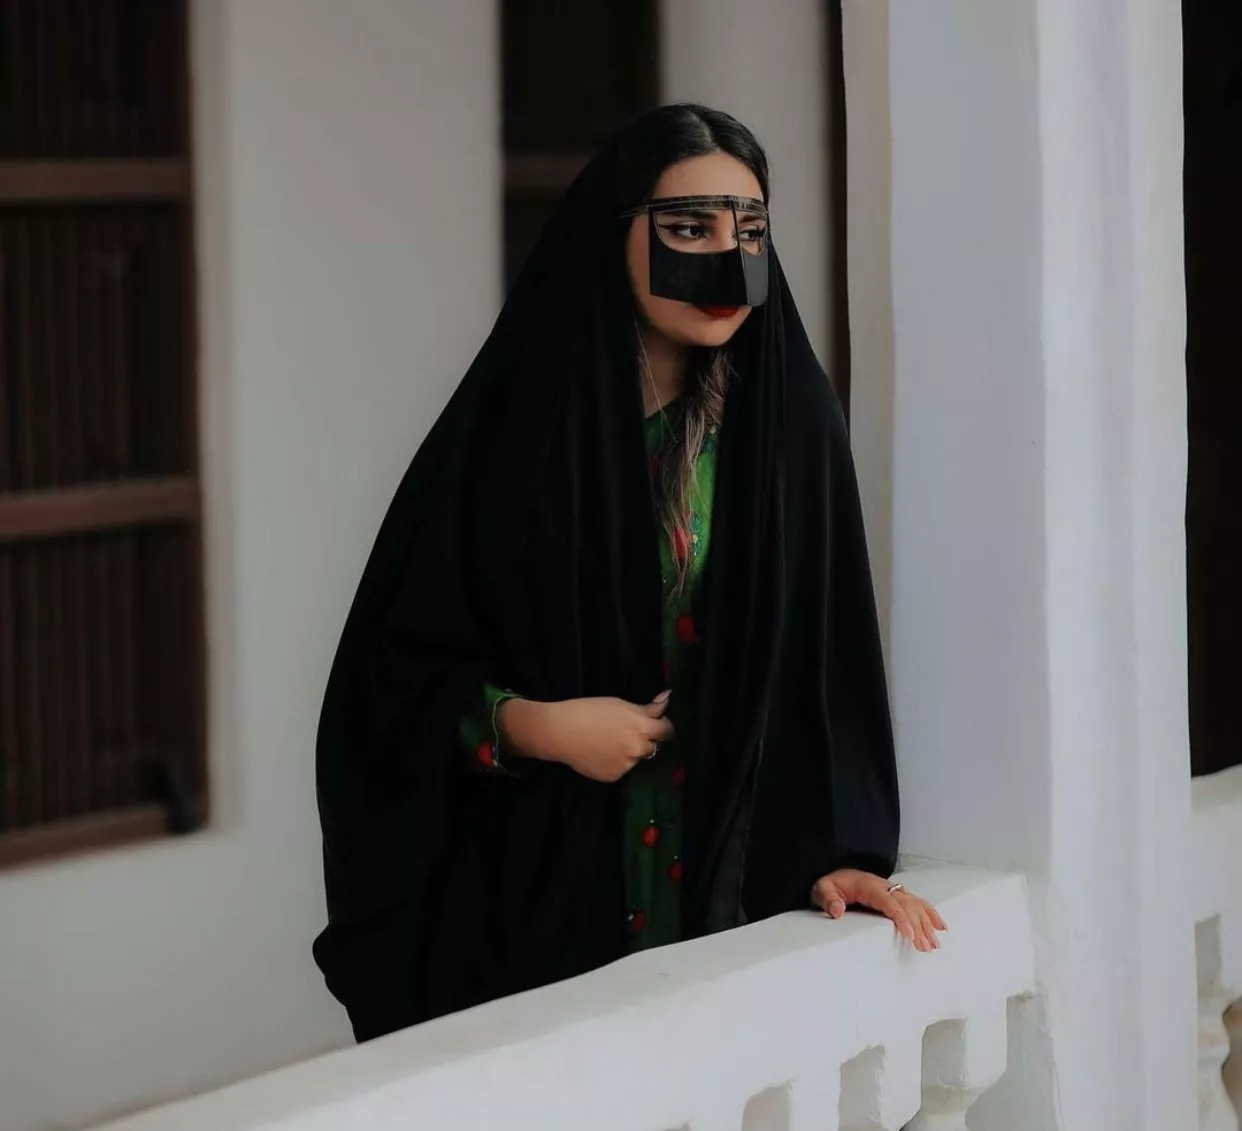 النساء السعوديات يحتفلن بيوم التأسيس السعودي 2022 بصور مميّزة بالزي التراثي